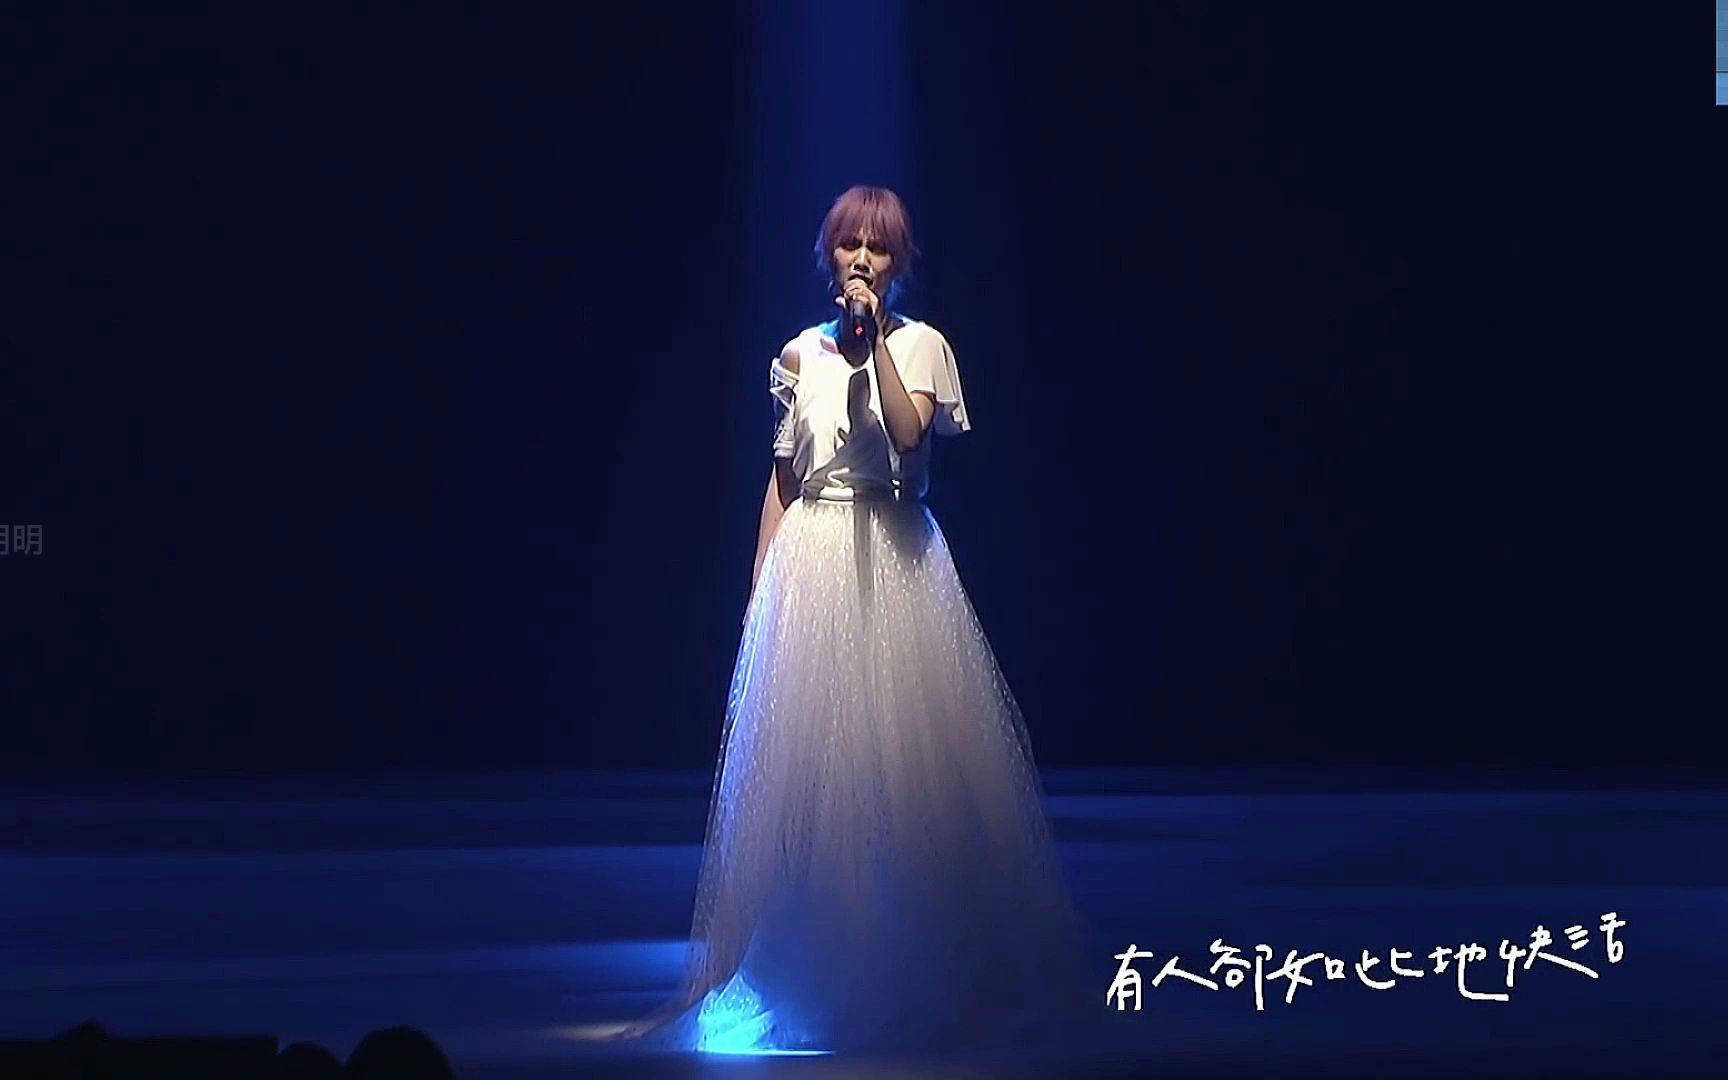 杨丞琳LIKE A STAR世界巡回演唱会歌单 - 歌单 - 网易云音乐